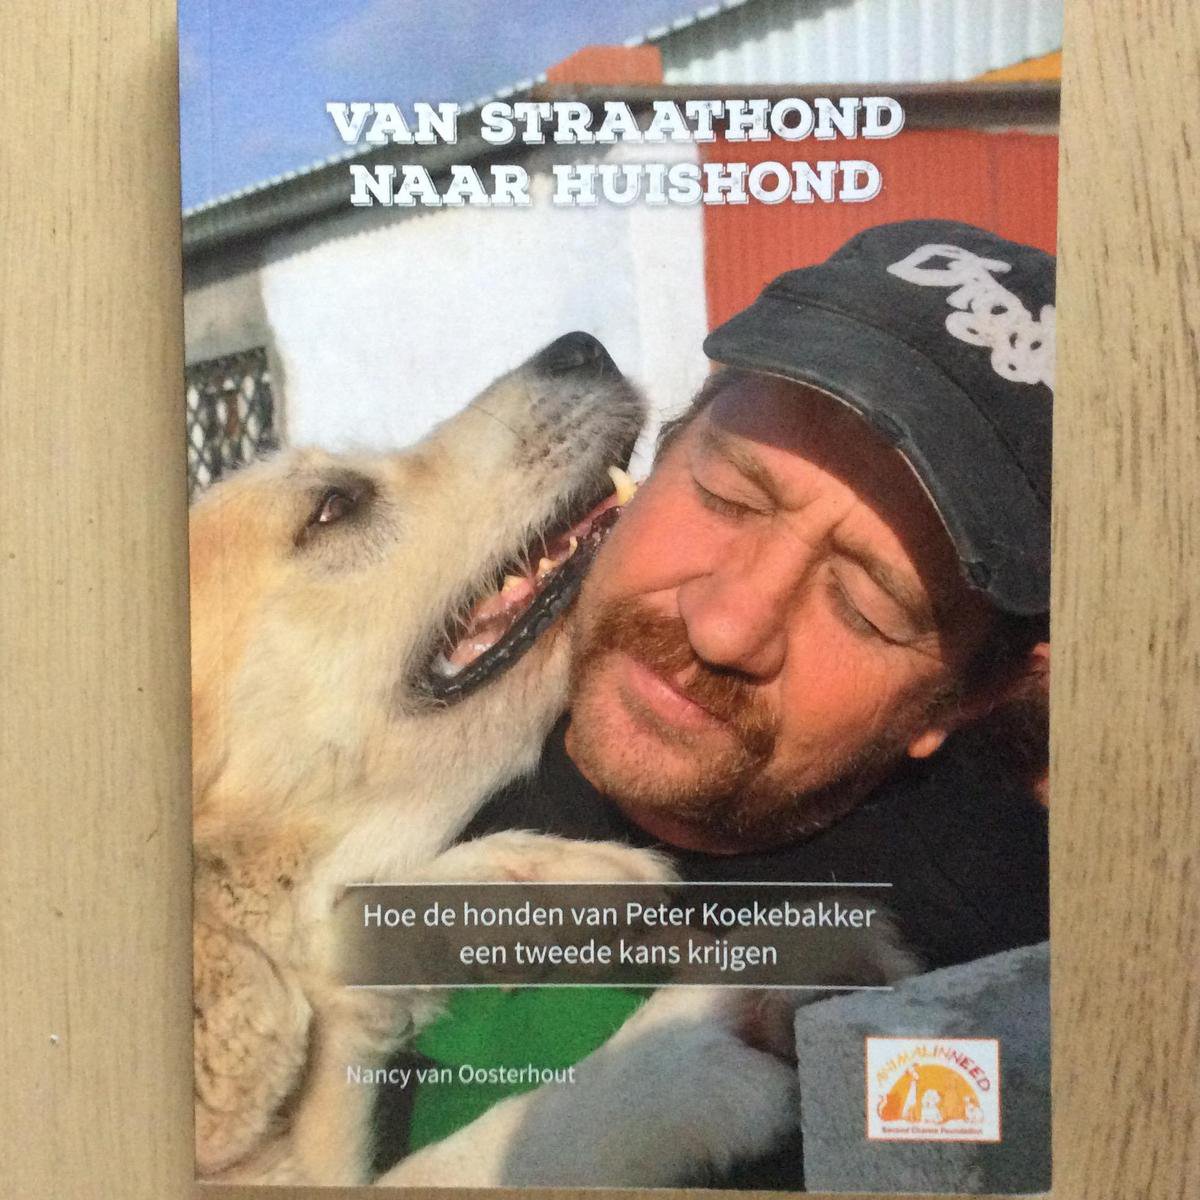 Van Straathond naar huishond : Hoe de honden van Peter Koekebakker een tweede kans krijgen.